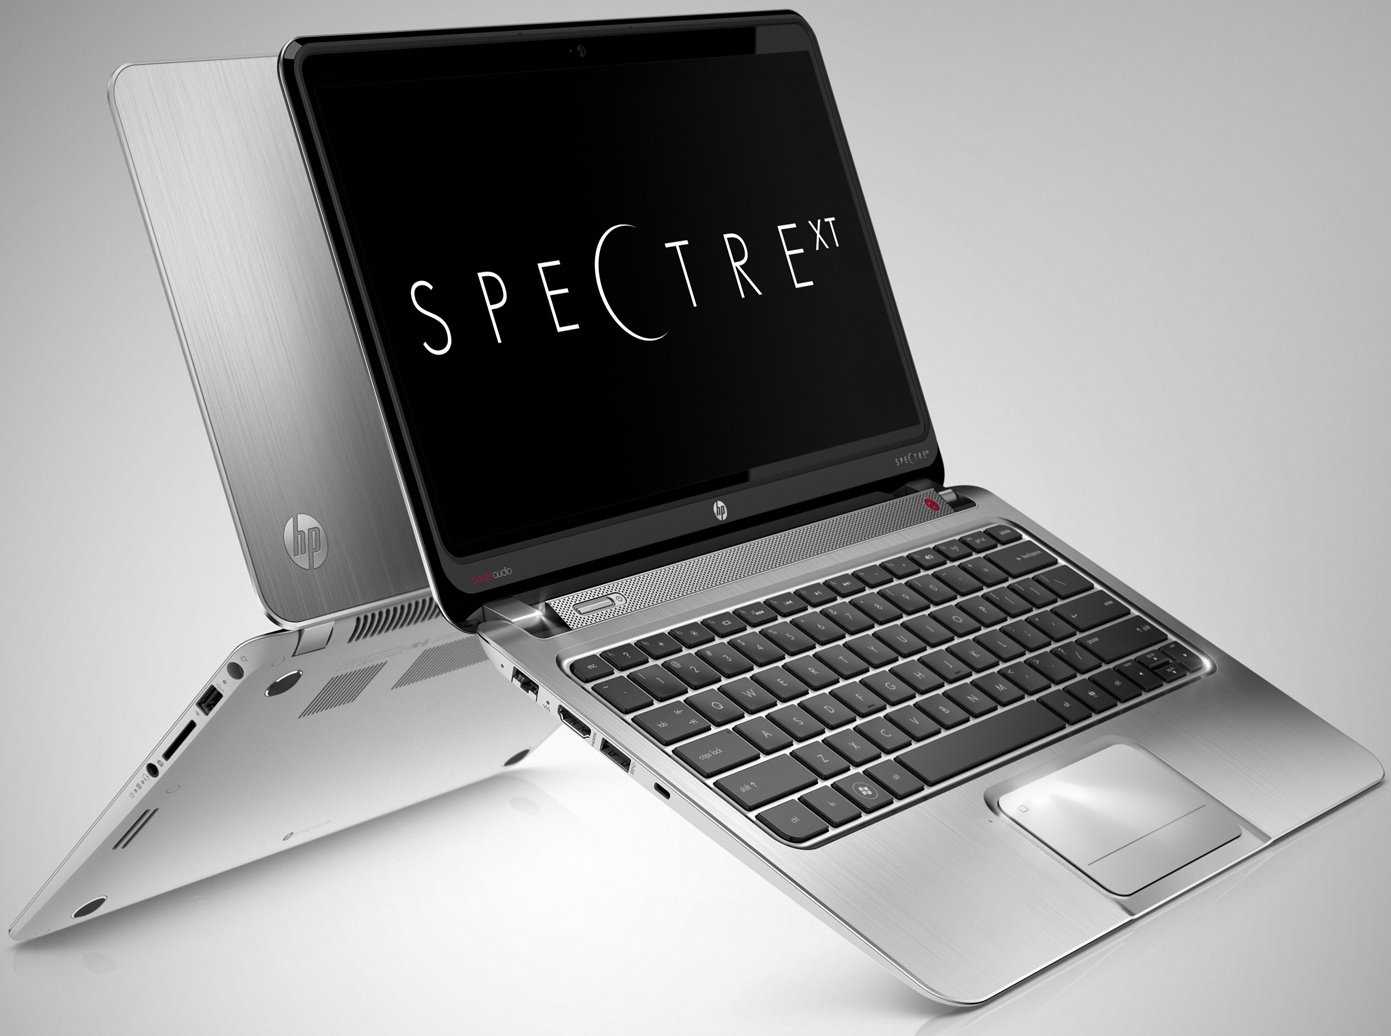 Ноутбук HP ENVY Spectre XT 15-4000er (C1S47EA) - подробные характеристики обзоры видео фото Цены в интернет-магазинах где можно купить ноутбук HP ENVY Spectre XT 15-4000er (C1S47EA)